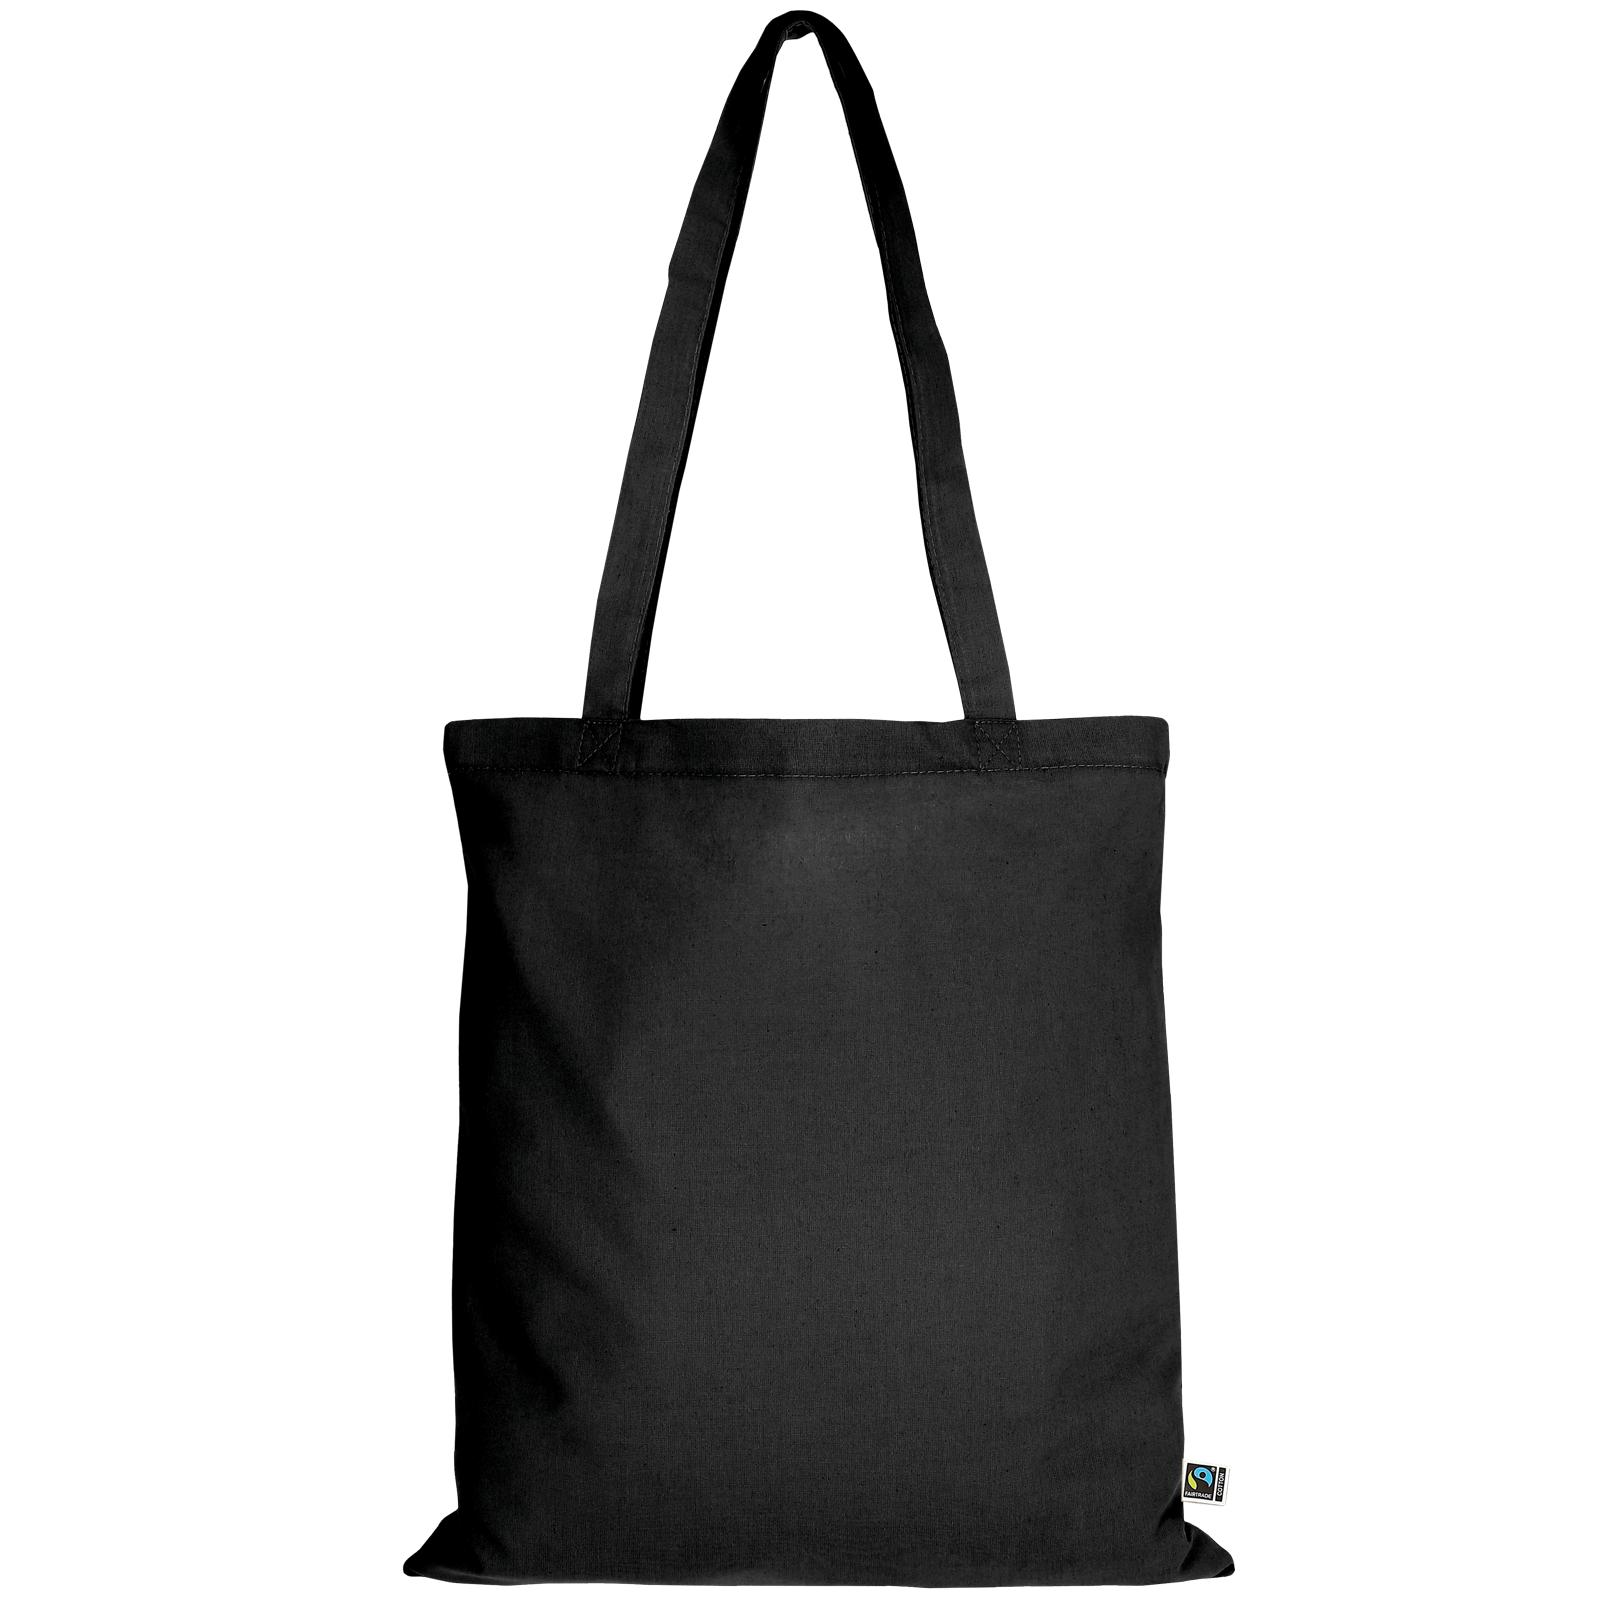 TEXXILLA Tasche aus Fairtrade-zertifizierter Baumwolle mit zwei langen Henkeln